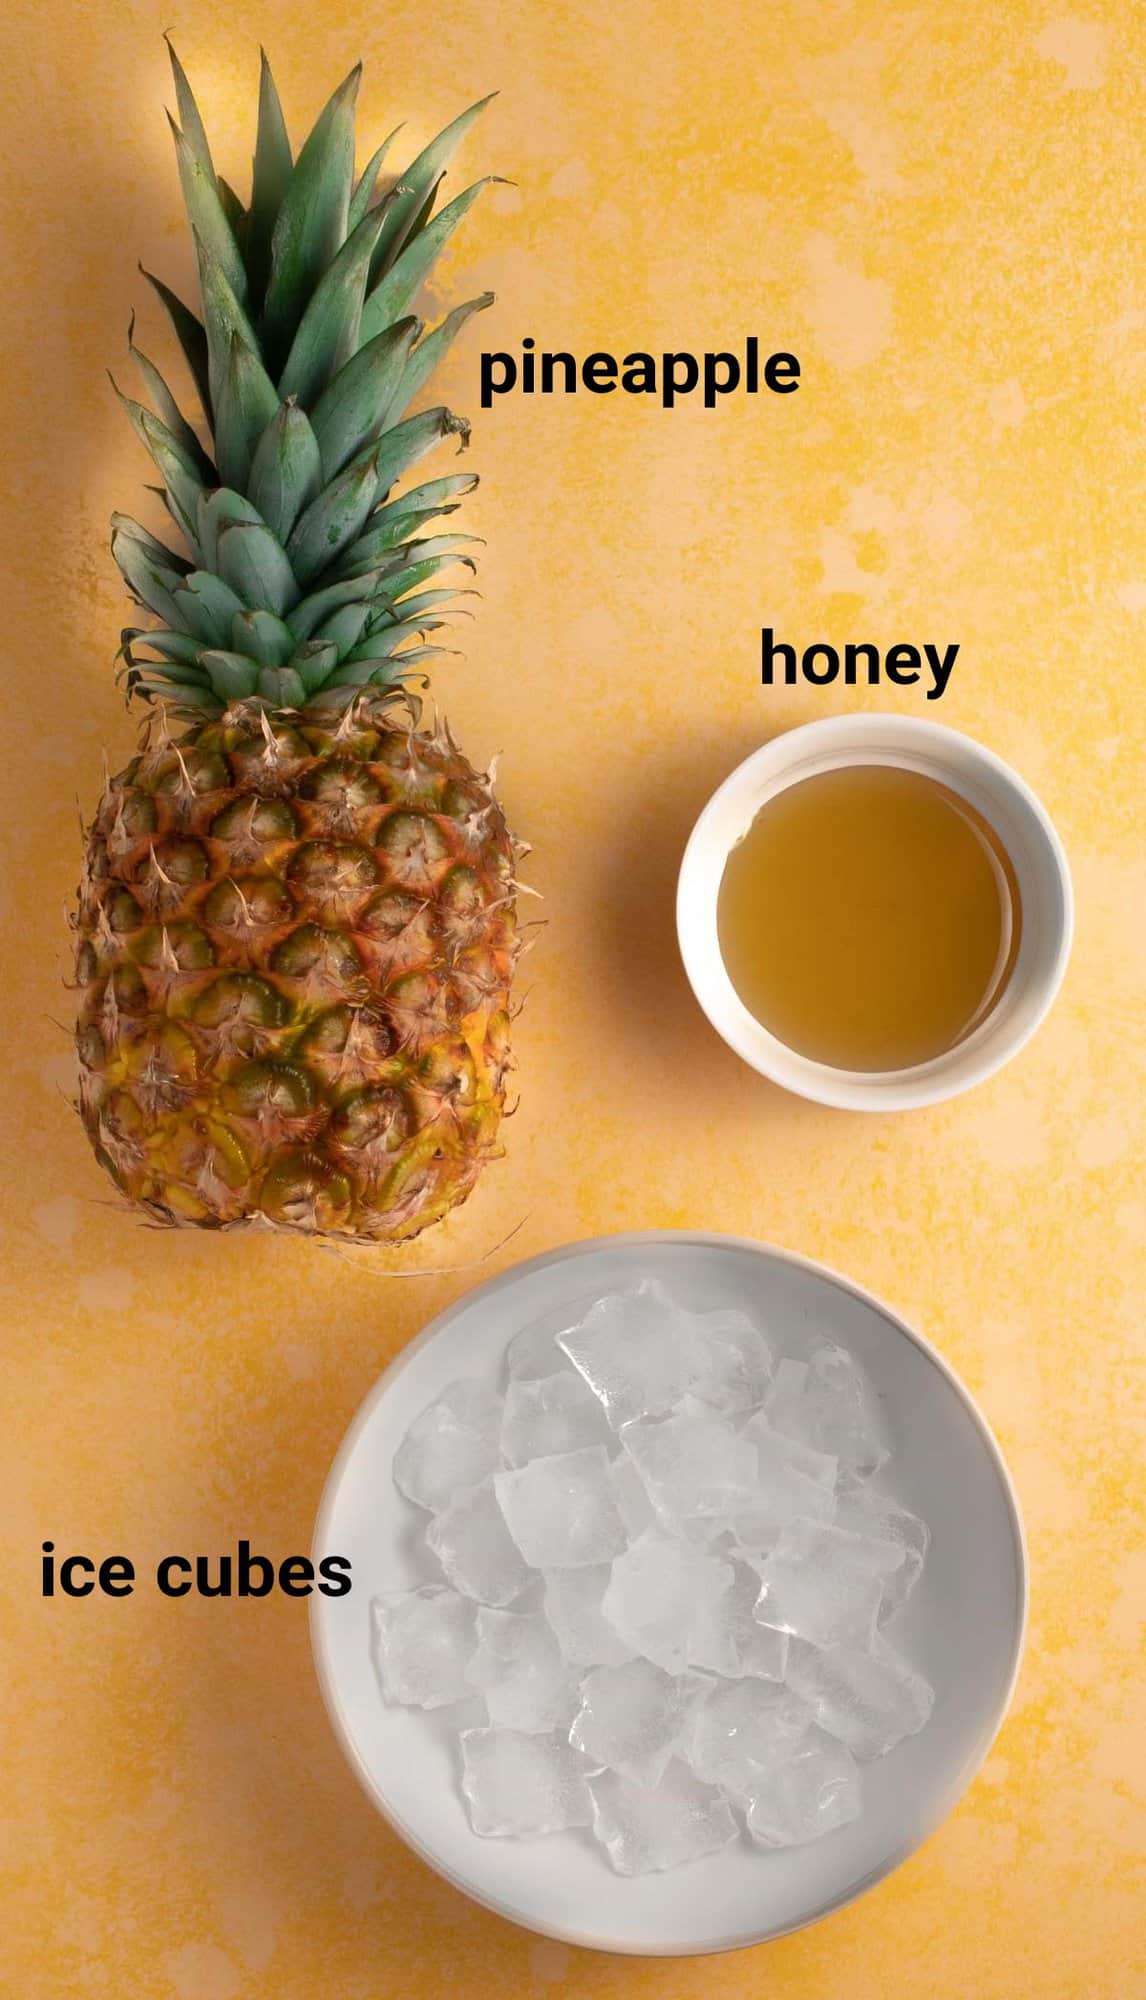 Pineapple slushie ingredients.